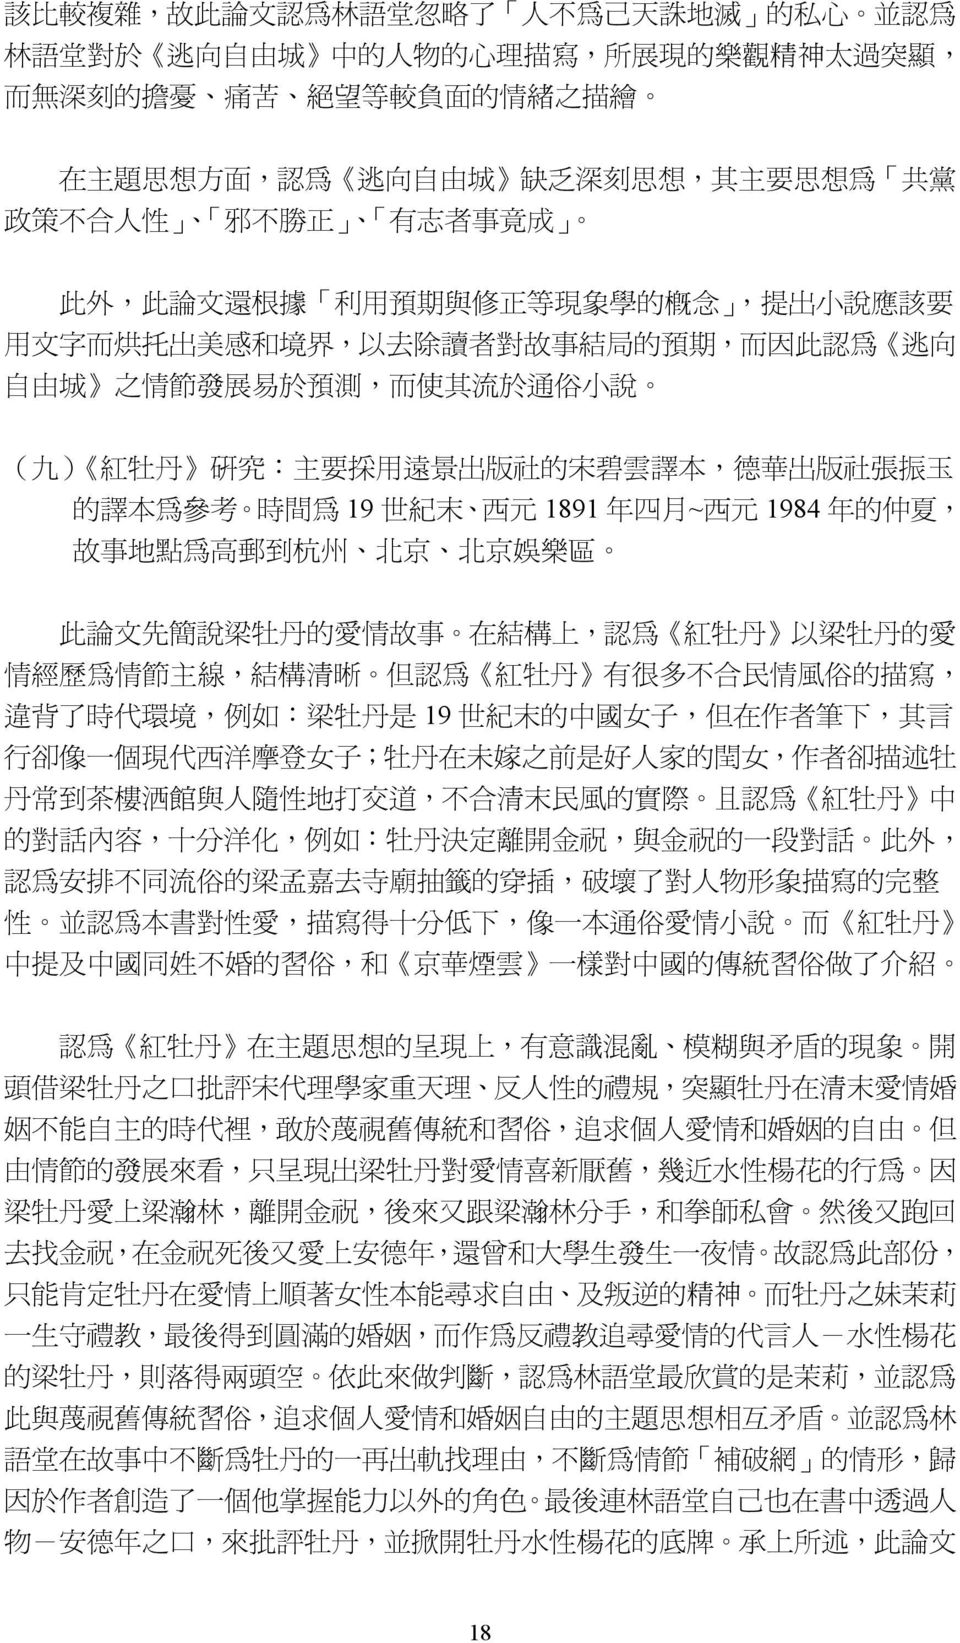 展 易 於 預 測, 而 使 其 流 於 通 俗 小 說 ( 九 ) 紅 牡 丹 研 究 : 主 要 採 用 遠 景 出 版 社 的 宋 碧 雲 譯 本, 德 華 出 版 社 張 振 玉 的 譯 本 為 參 考 時 間 為 19 世 紀 末 西 元 1891 年 四 月 ~ 西 元 1984 年 的 仲 夏, 故 事 地 點 為 高 郵 到 杭 州 北 京 北 京 娛 樂 區 此 論 文 先 簡